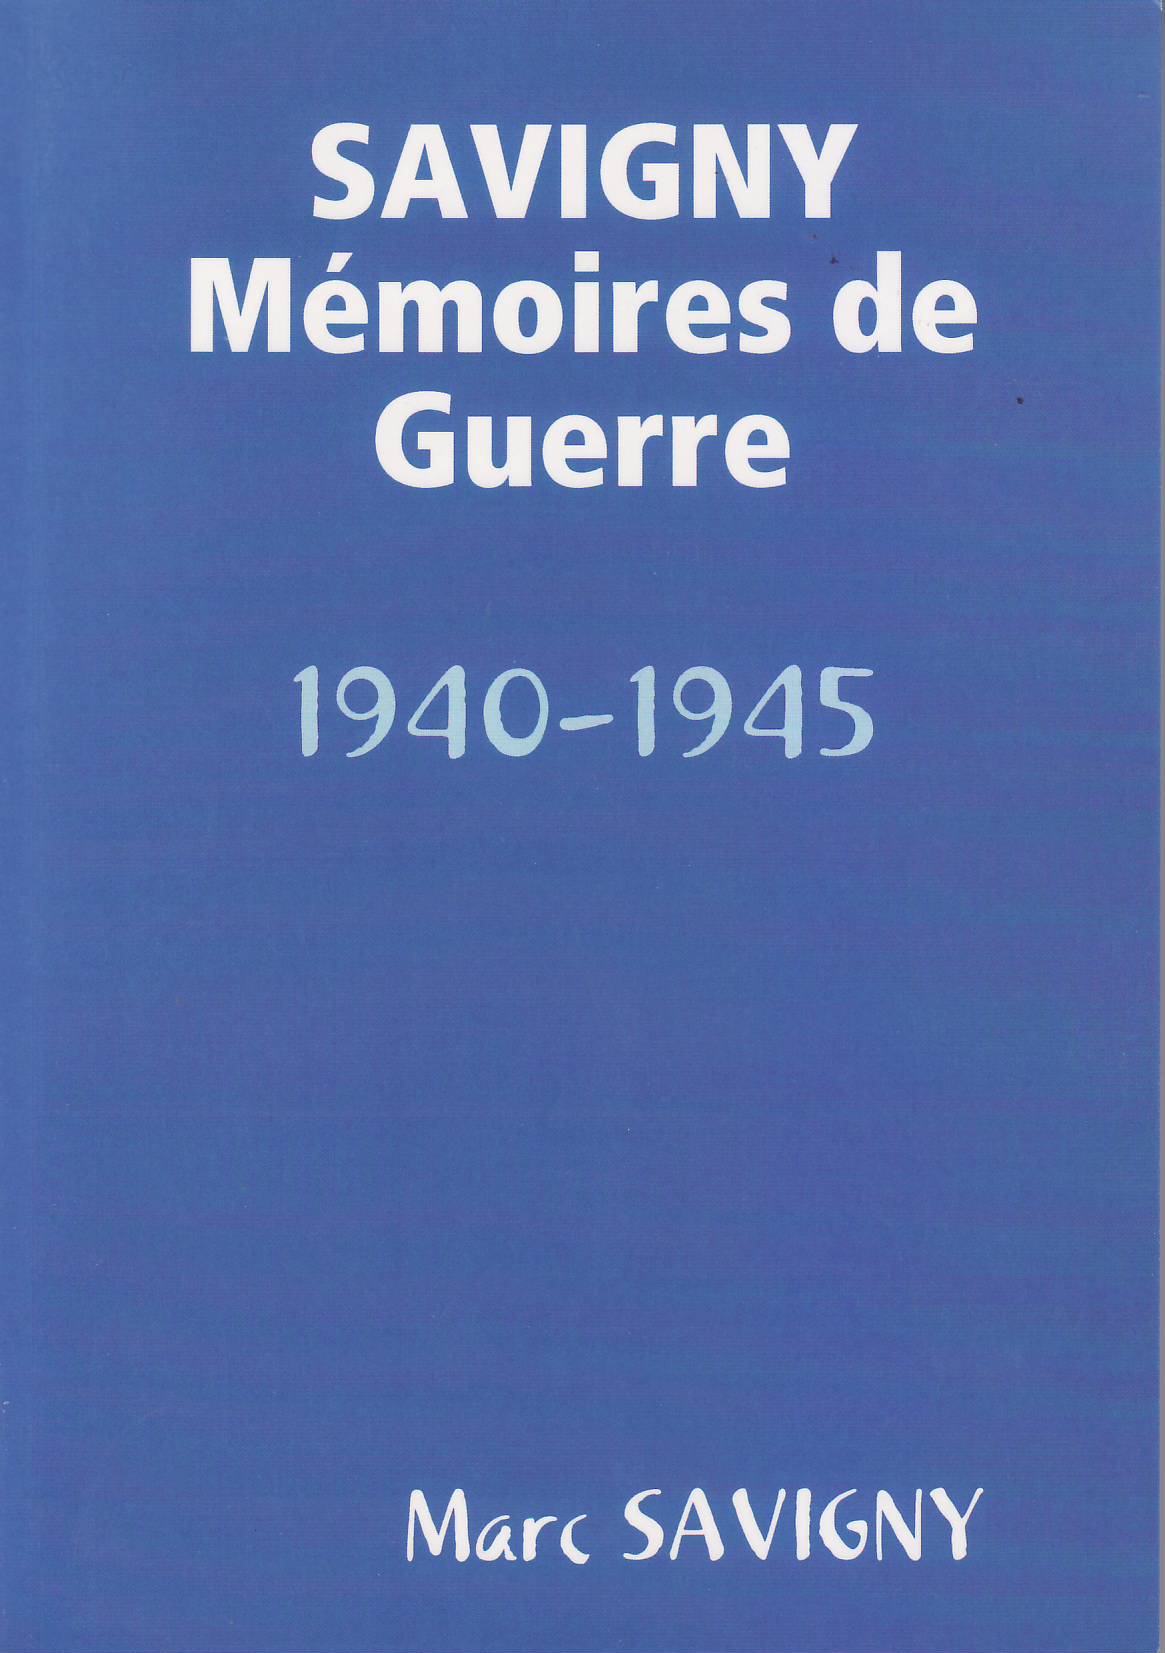 Savigny Mémoires de guerre 1940-1945